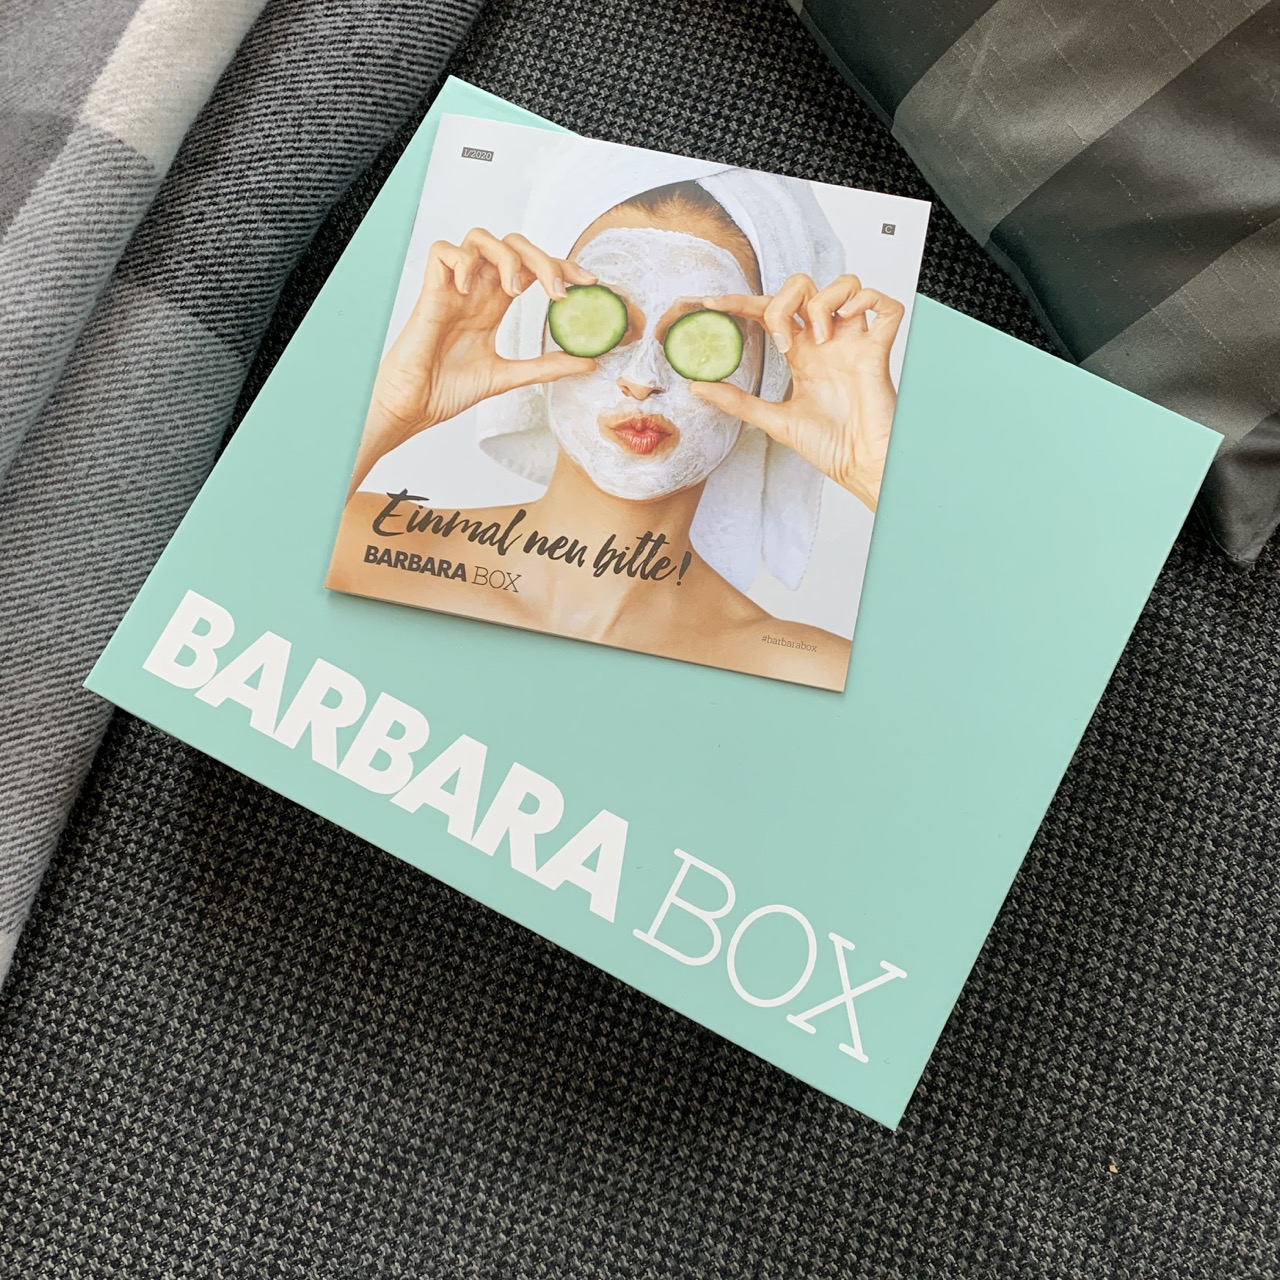 BARBARA BOX: Einmal neu, bitte!